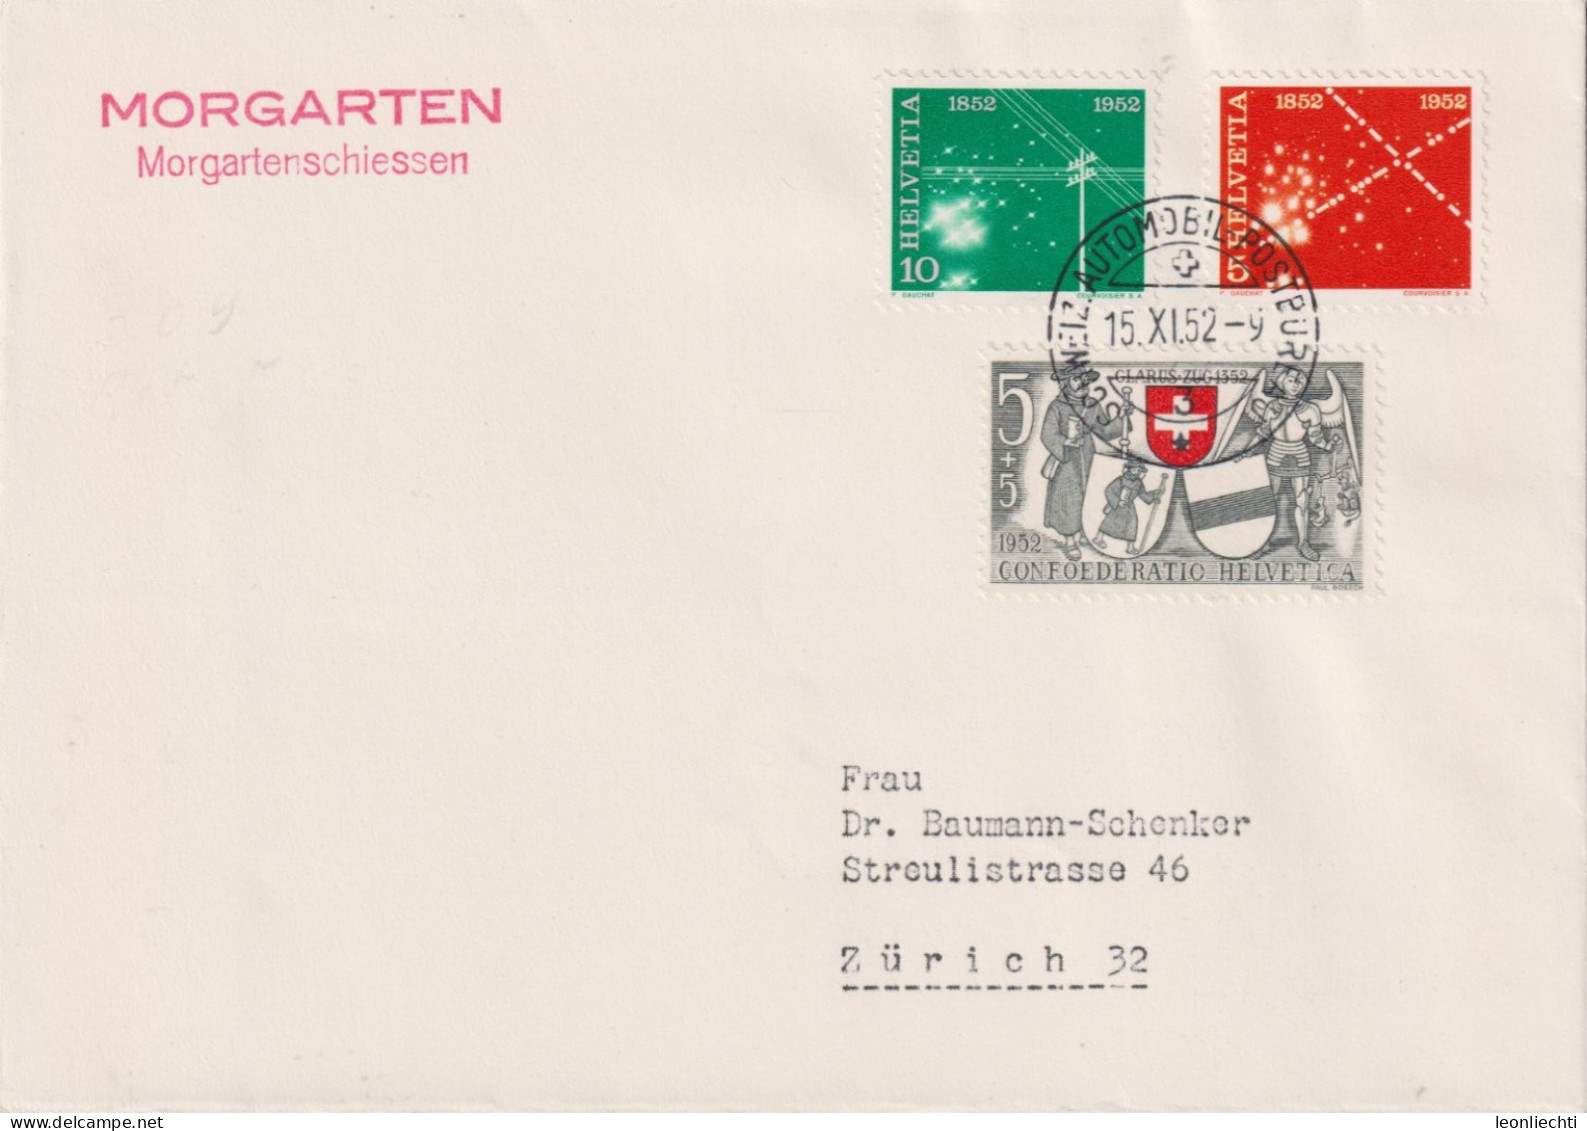 1952 Schweiz, Brief Zum:CH 309+310+B56, Mi:CH 566+567+571, MORGARTEN, Morgartenschiessen - Covers & Documents